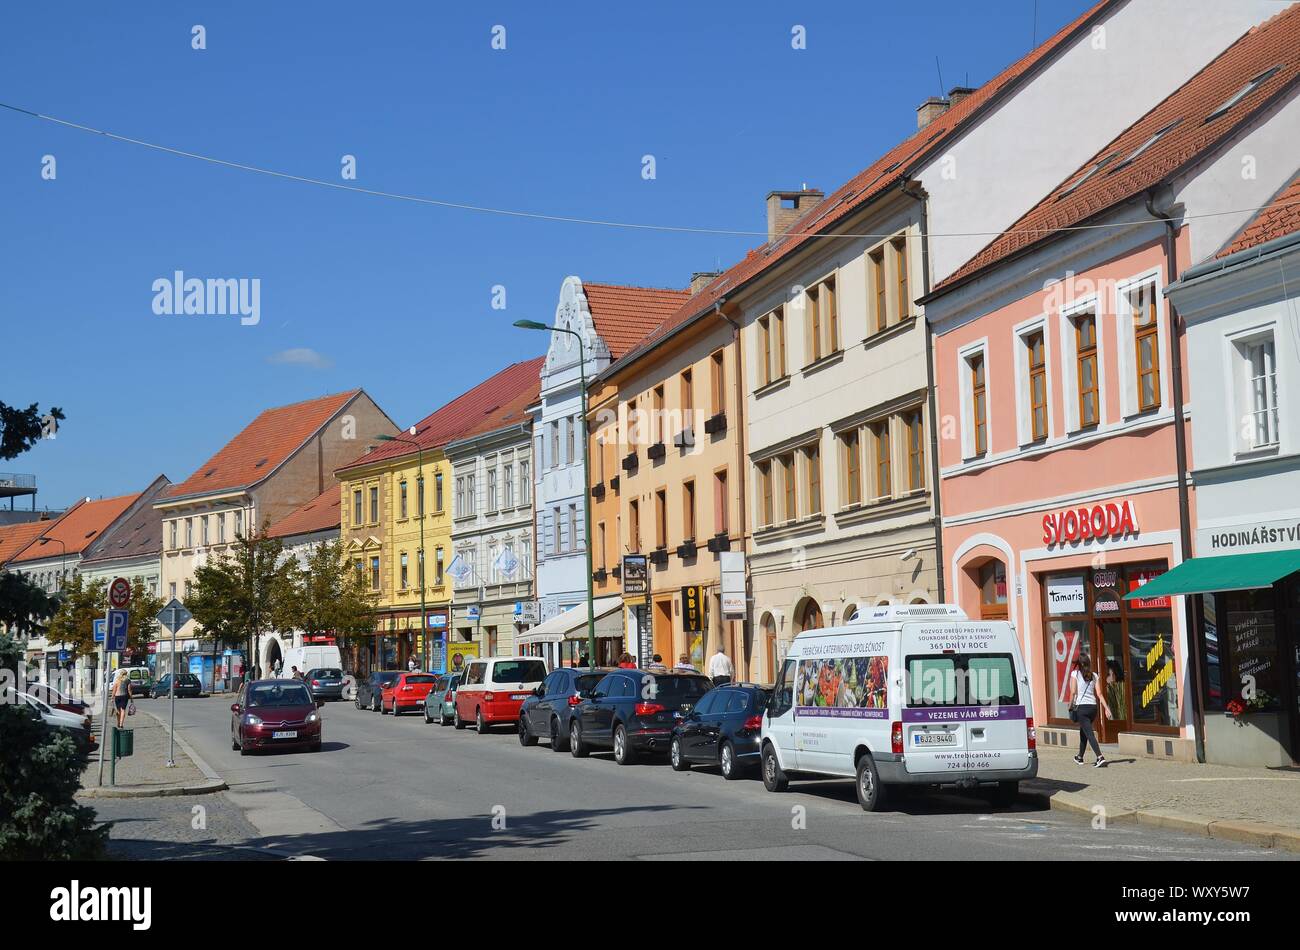 Trebic in Repubblica Ceca, UNESCO Weltkulturerbe: Am Hauptplatz, Altstadthäuser Foto Stock